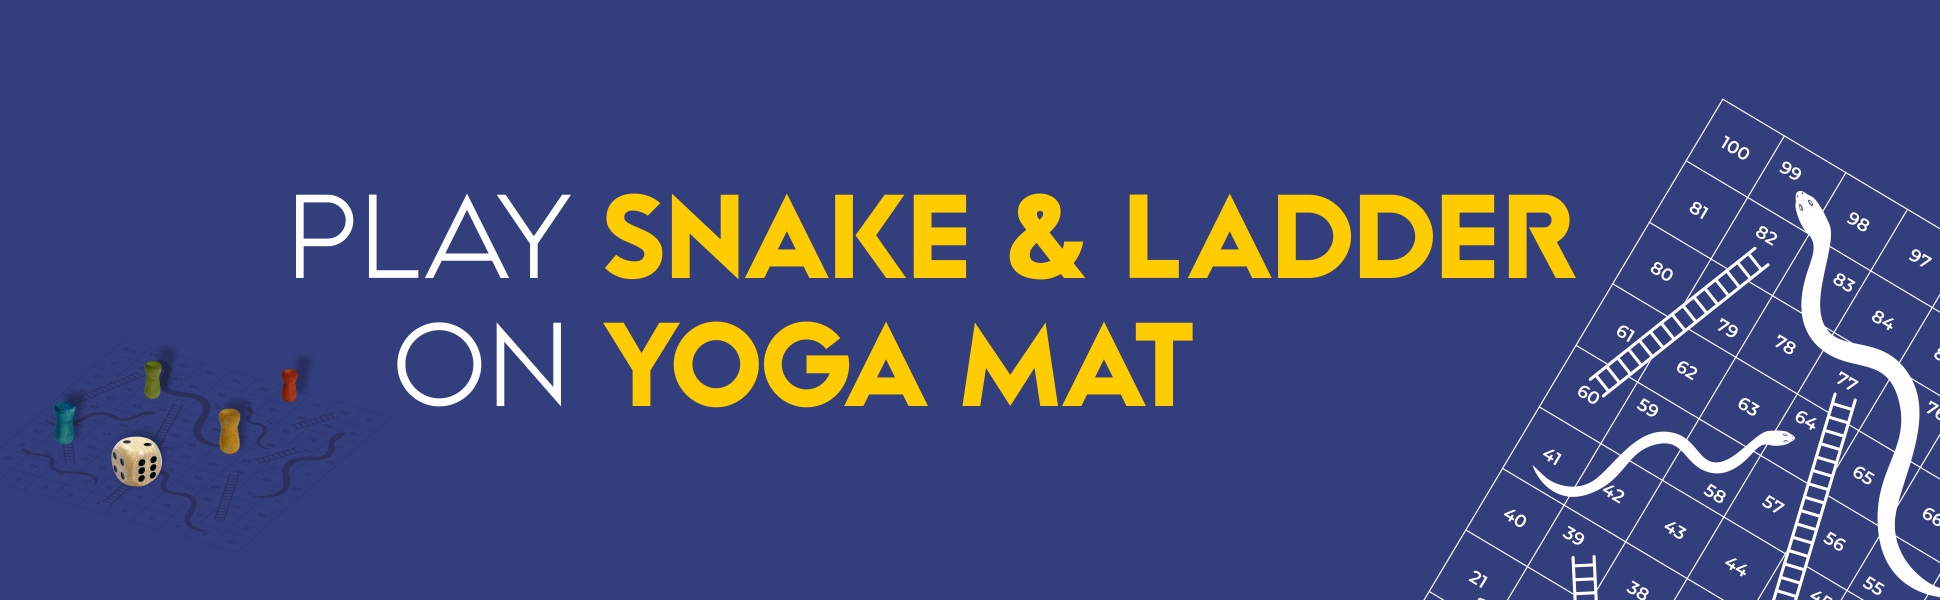 Play Snake & Ladder On Yoga Mat